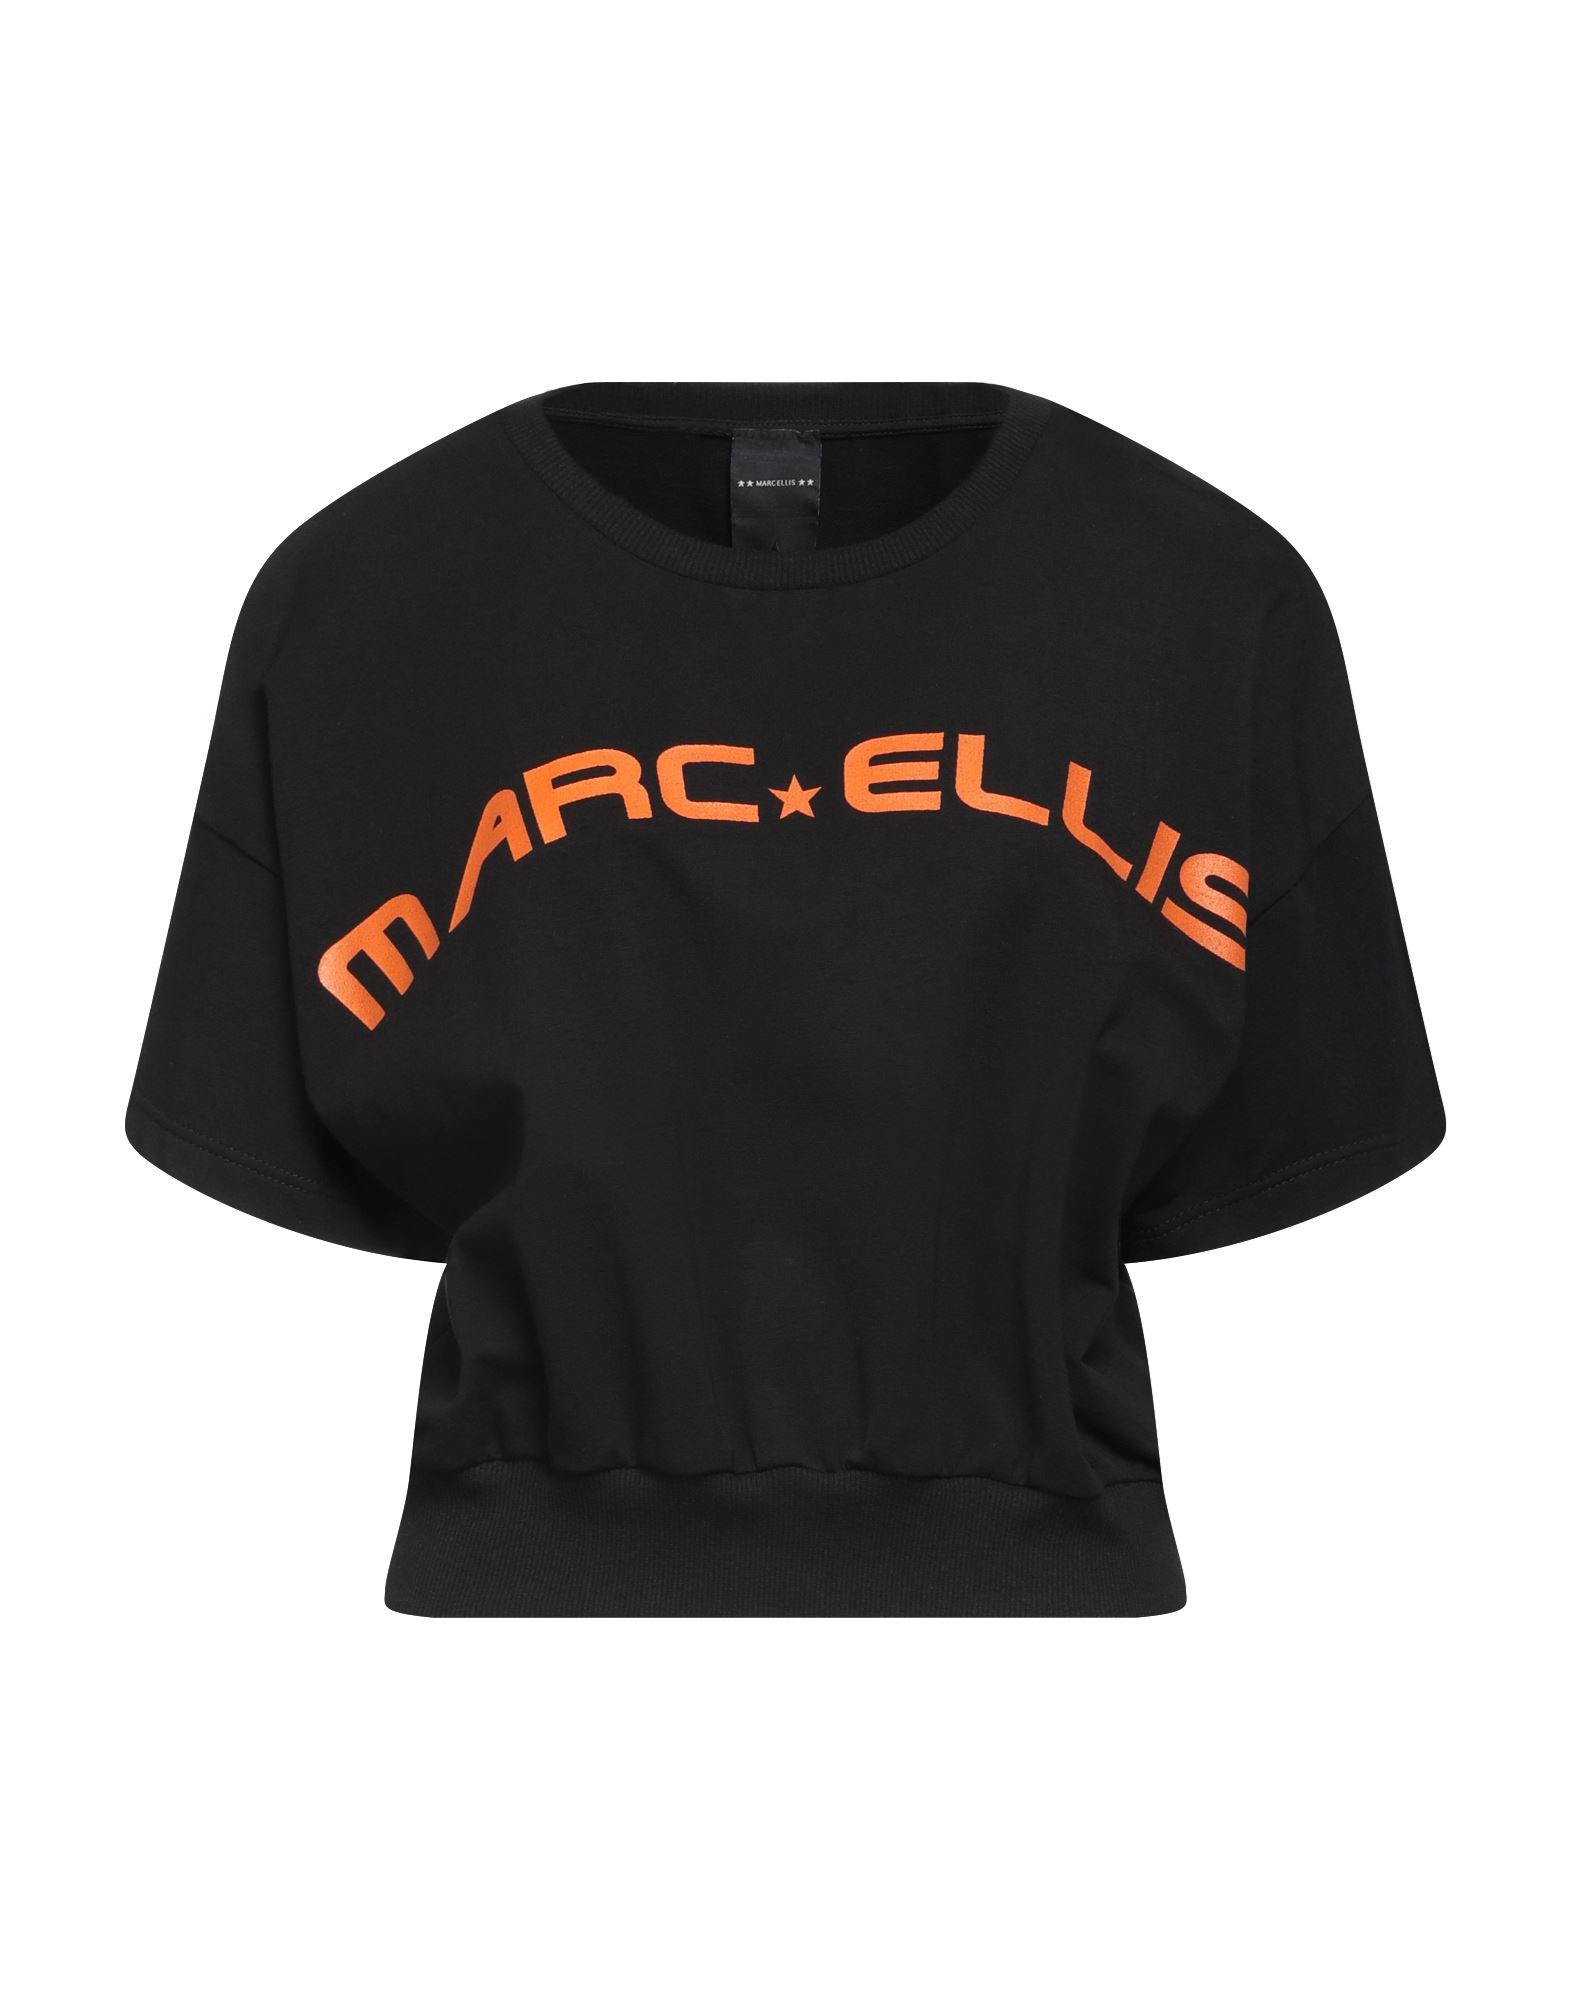 Marc Ellis Sweatshirts In Black